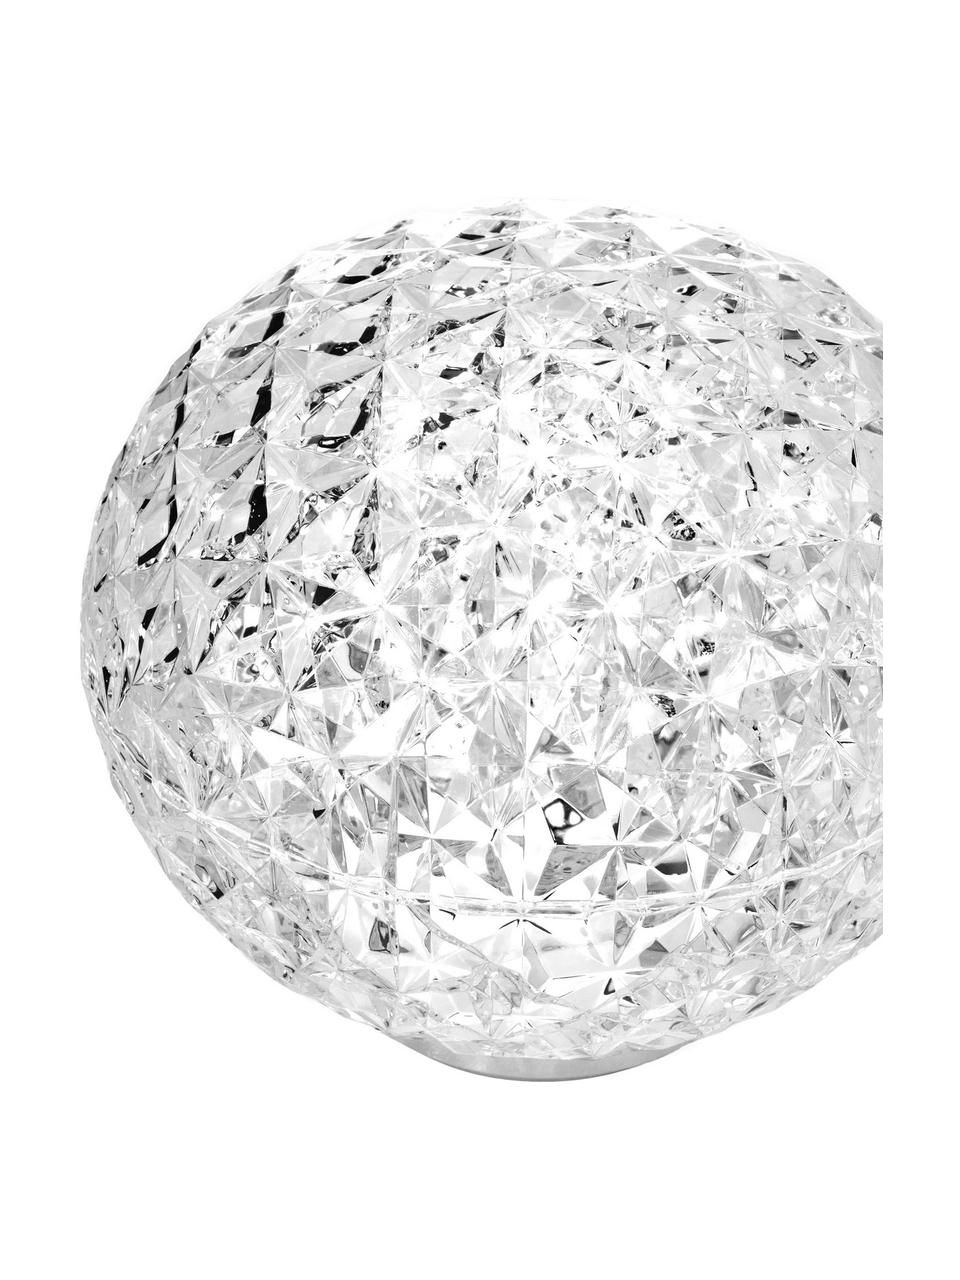 Mobilna lampa stołowa LED z funkcja przyciemniania Planet, Transparentny, Ø 16 x W 14 cm